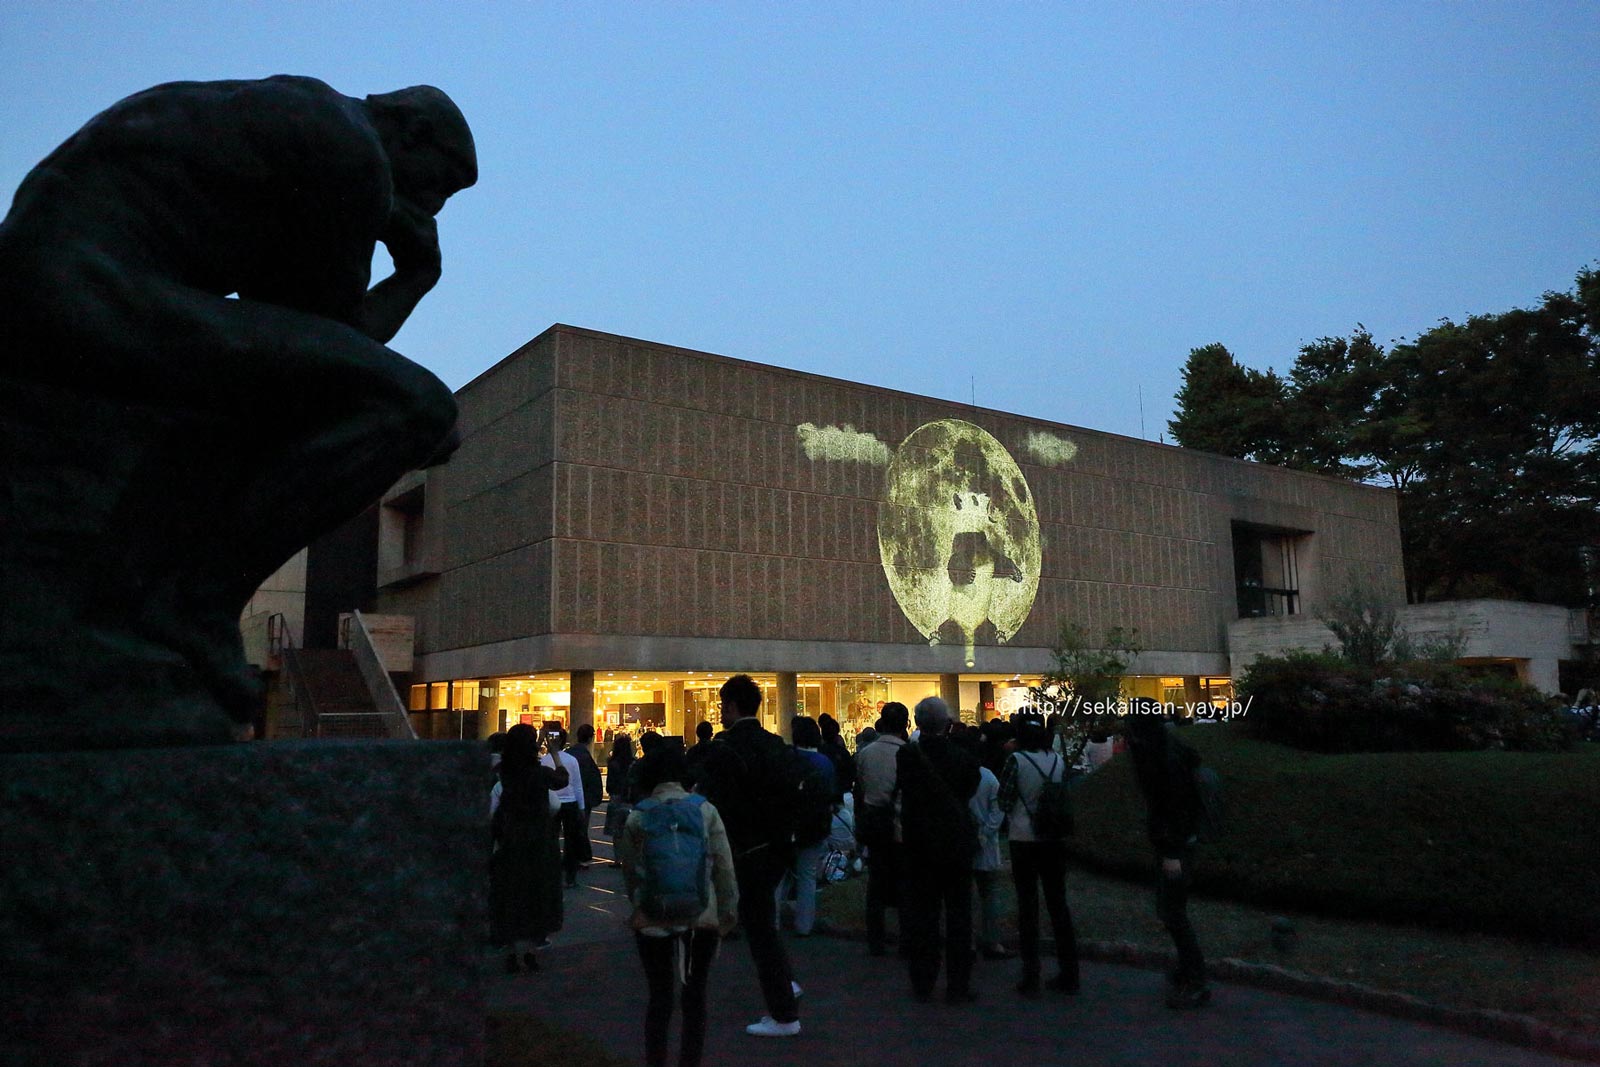 日本「国立西洋美術館本館」プロジェクションマッピング